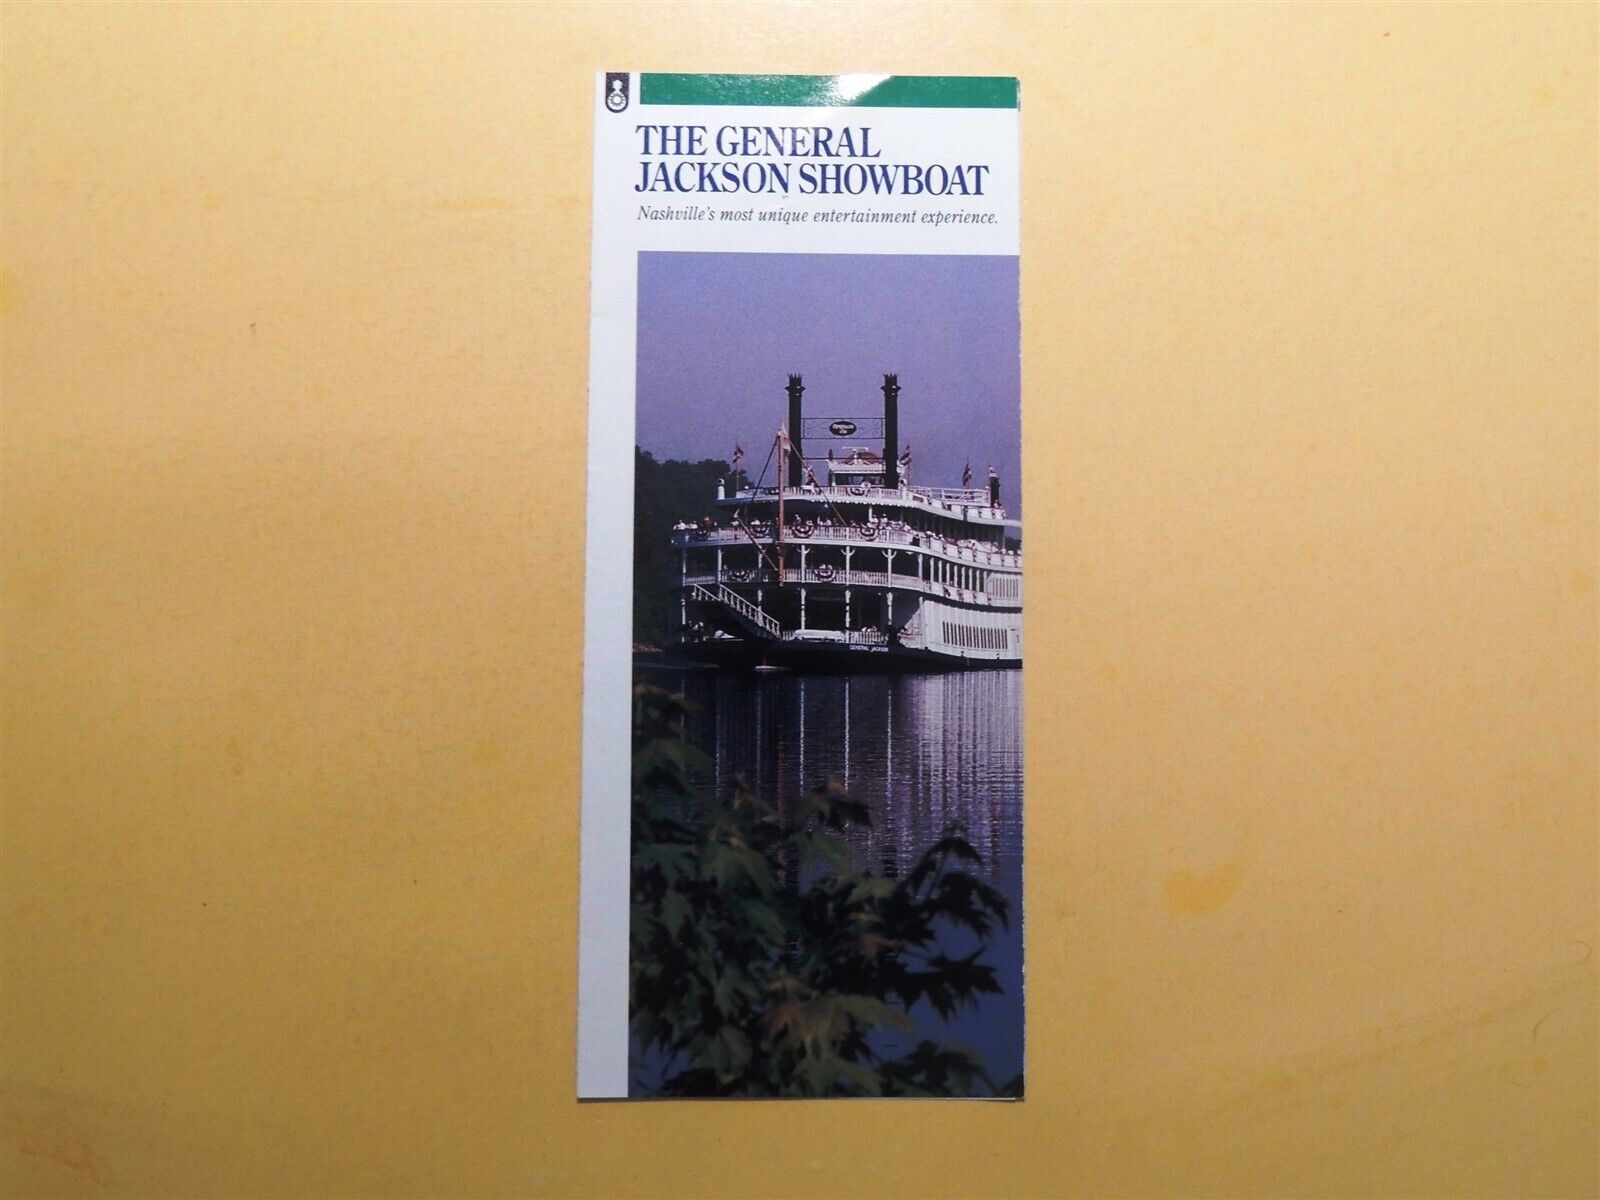 General Jackson Showboat Nashville Tennessee vintage brochure 1993^